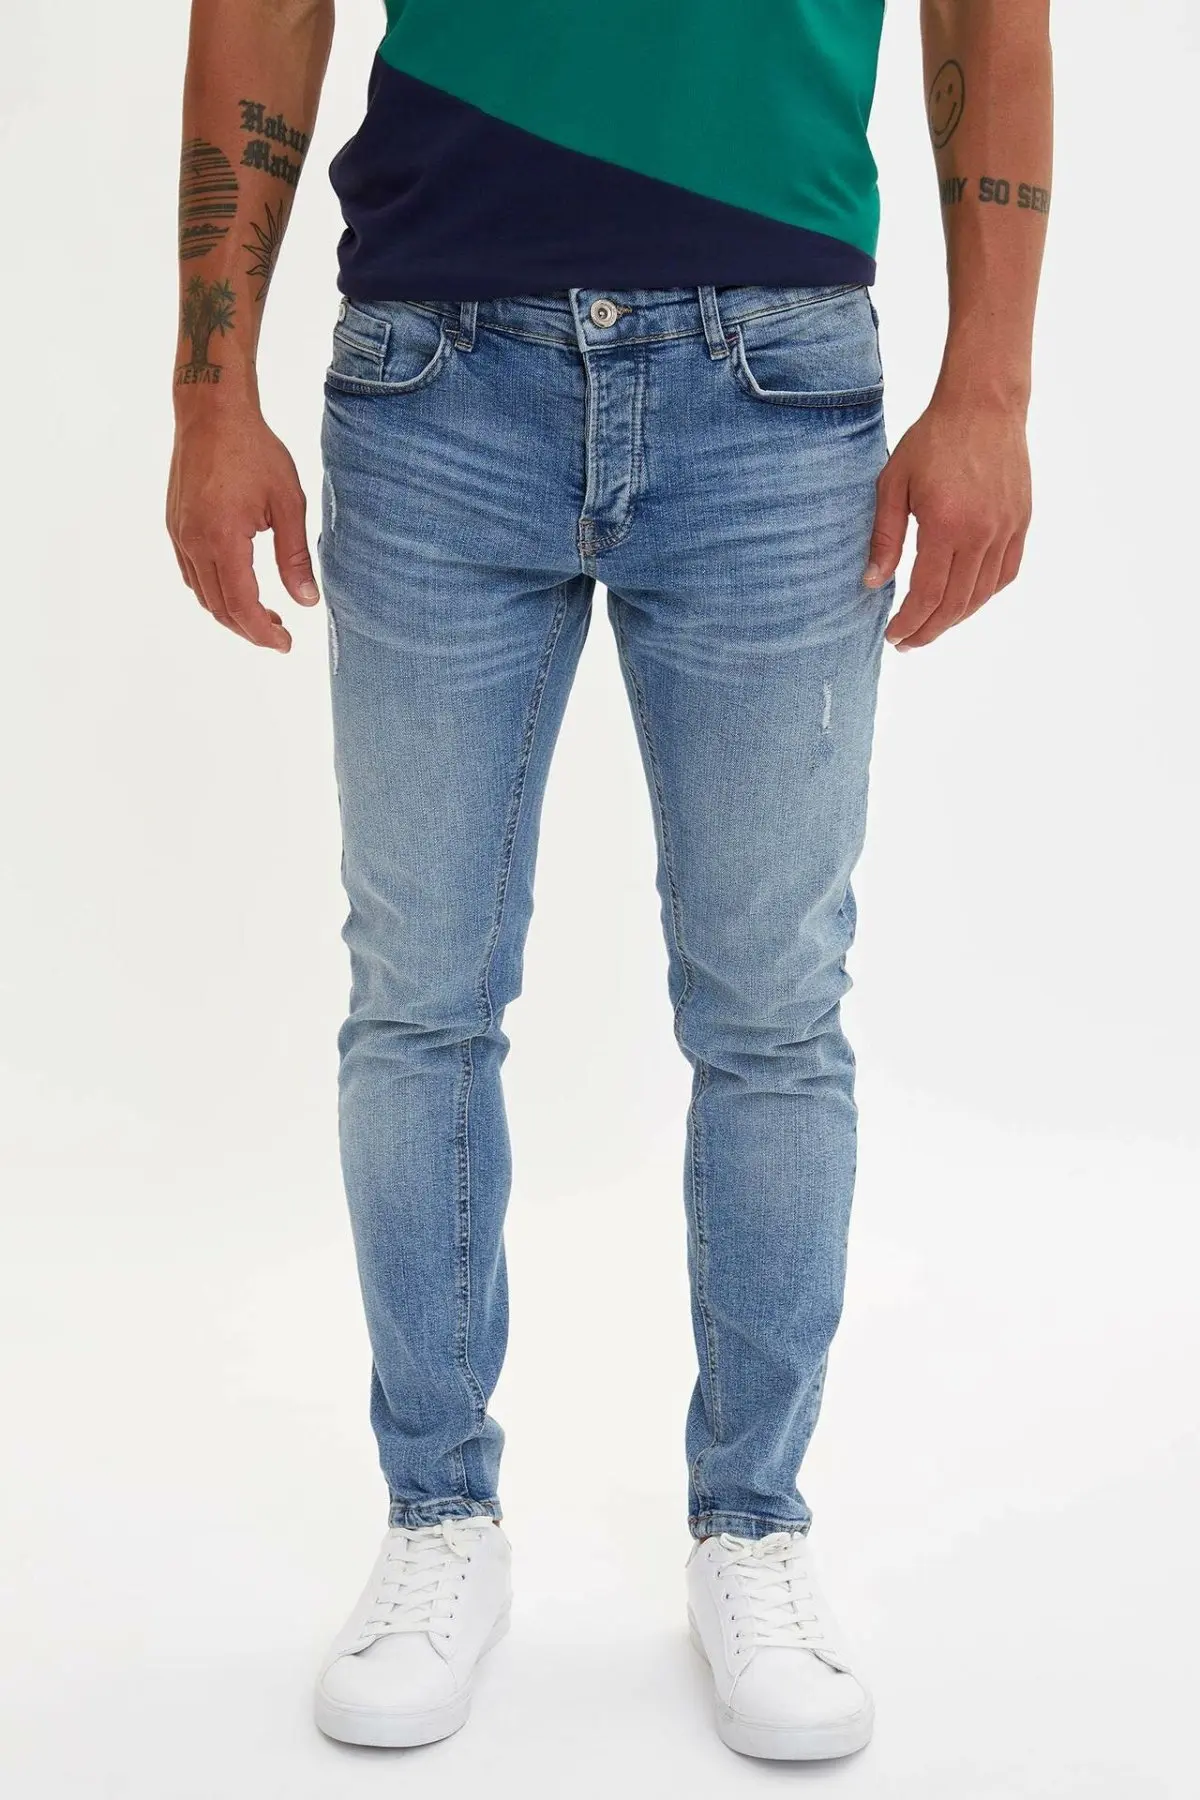 DeFacto Man Fashion Wash Blue Simple Trousers Jeans Casual Classic Denim Jeans Casual Elasticity Pants Male-M1260AZ19AU-M1260AZ19AU